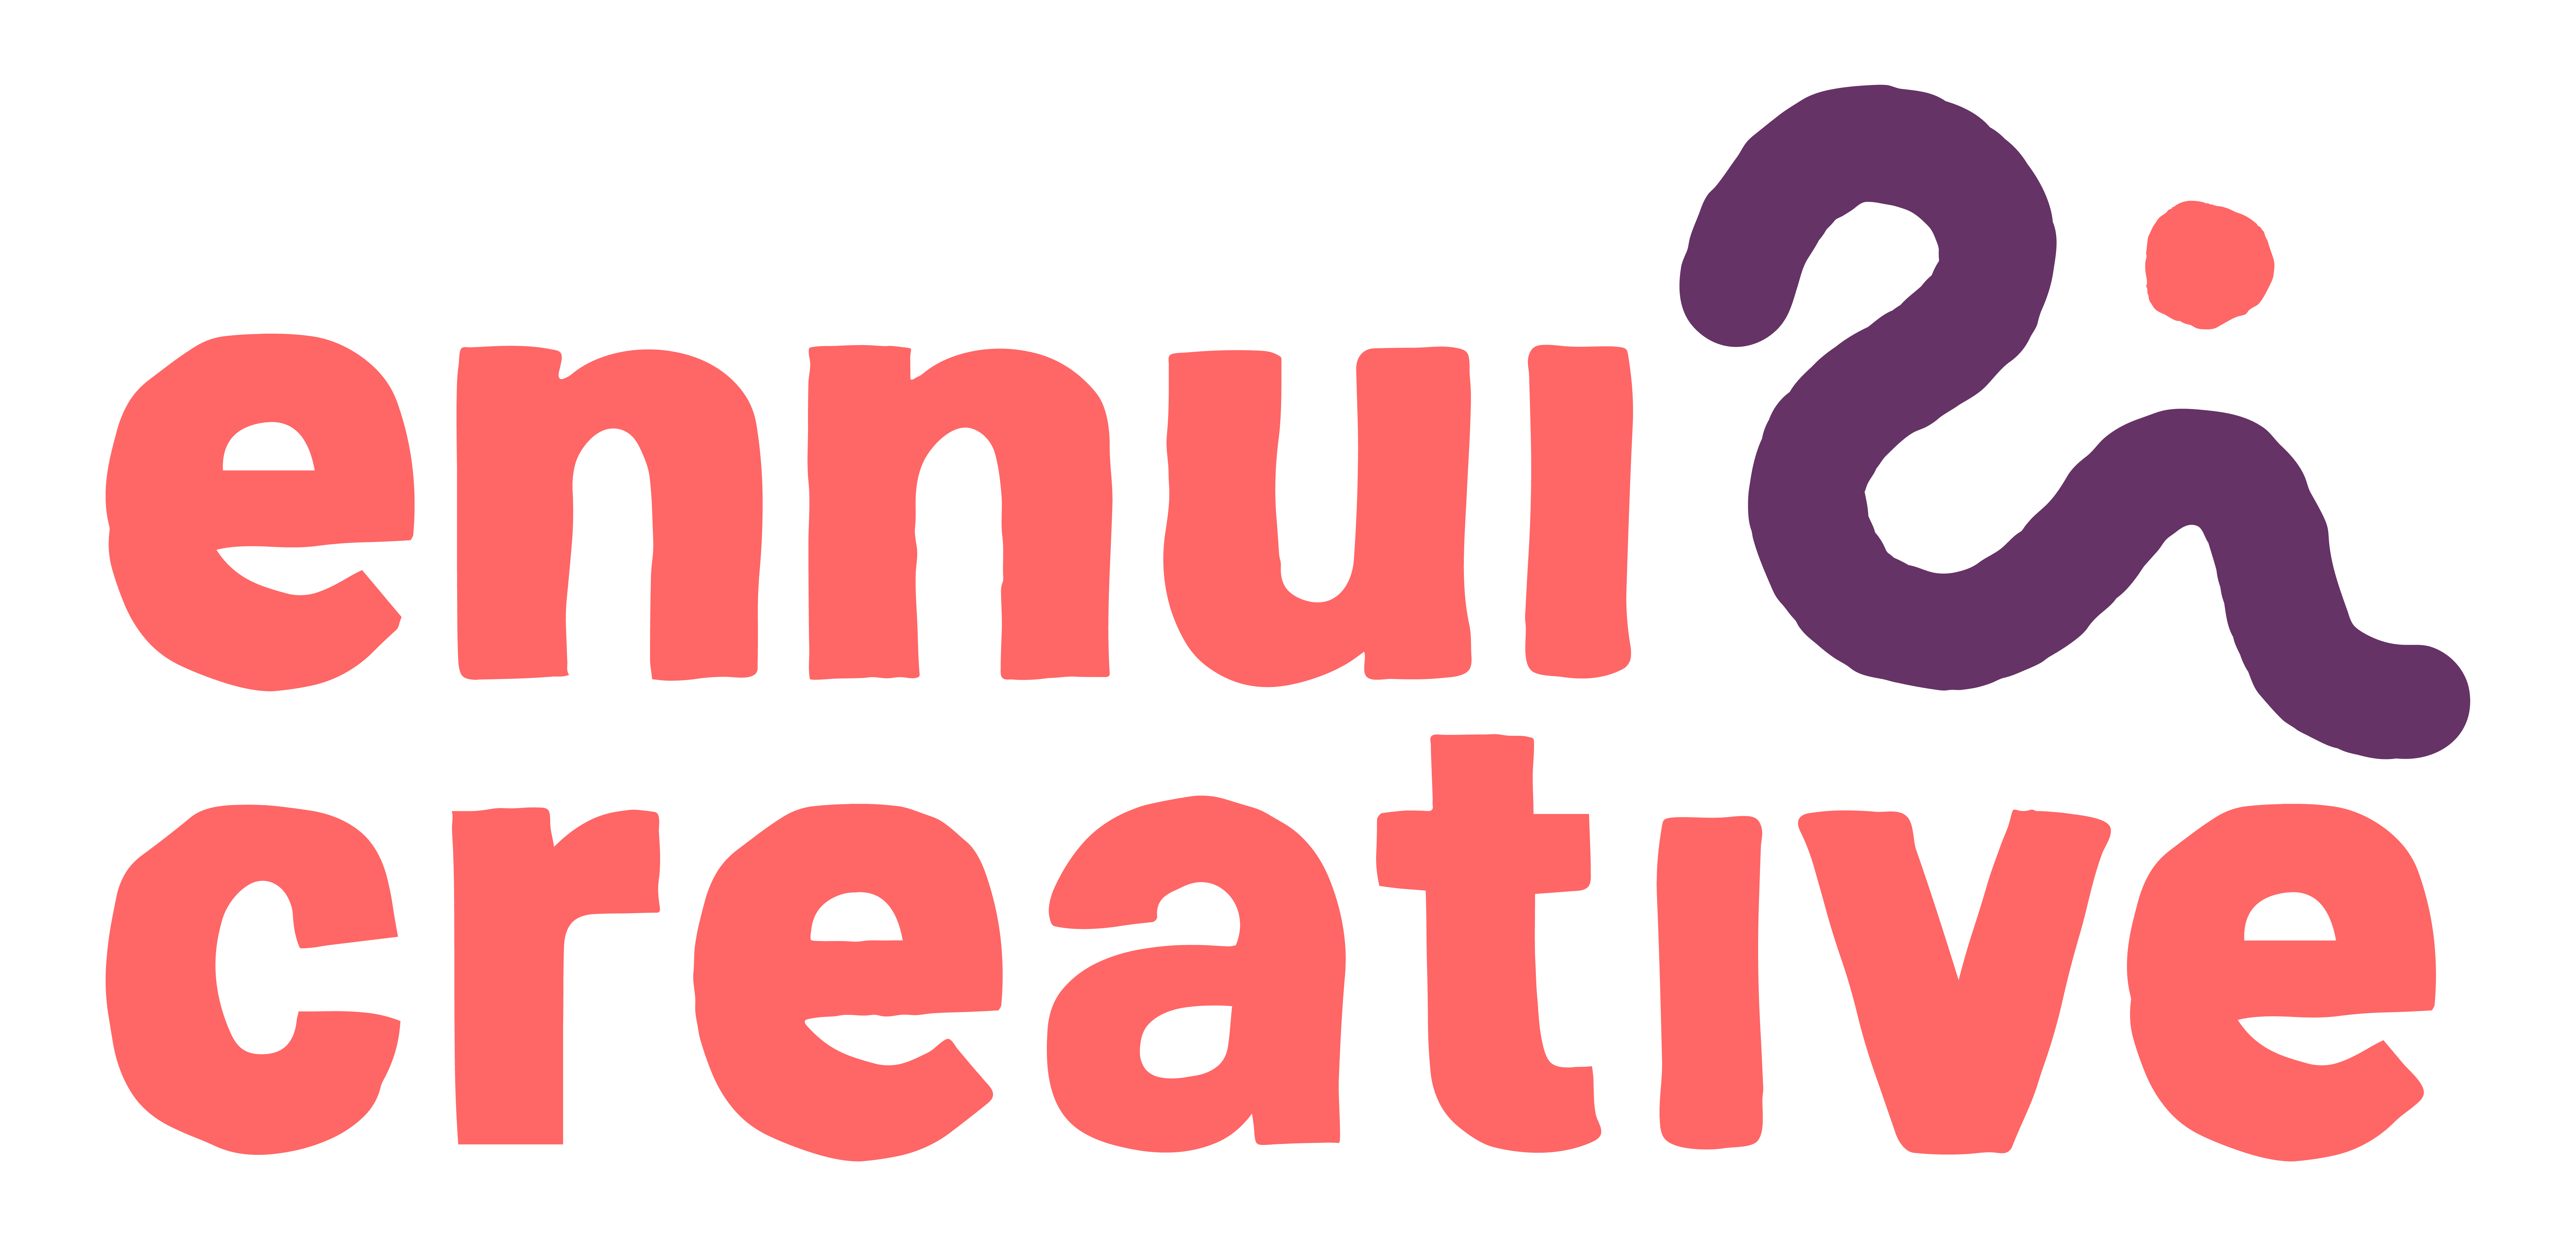 Ennui Creative Inc.